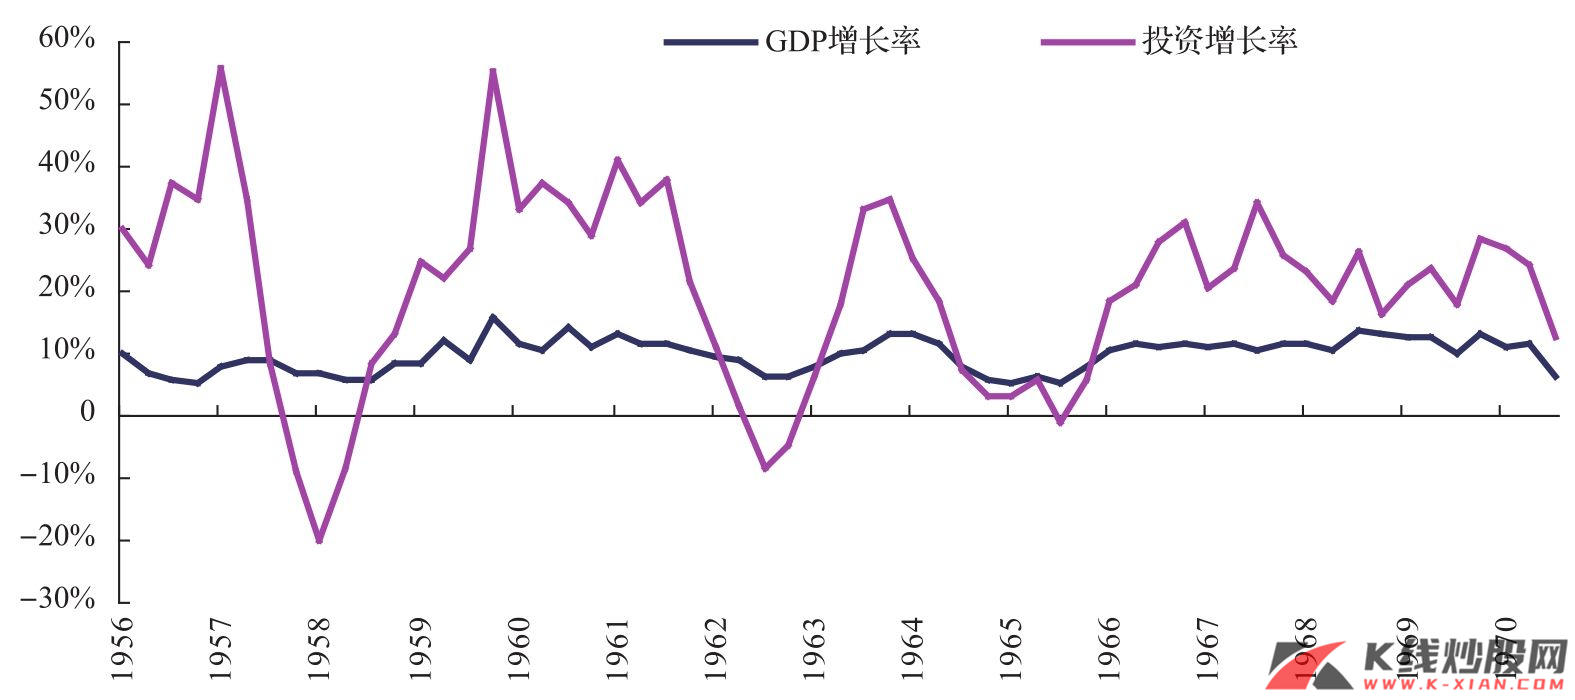 日本的GDP增长率和投资增长率